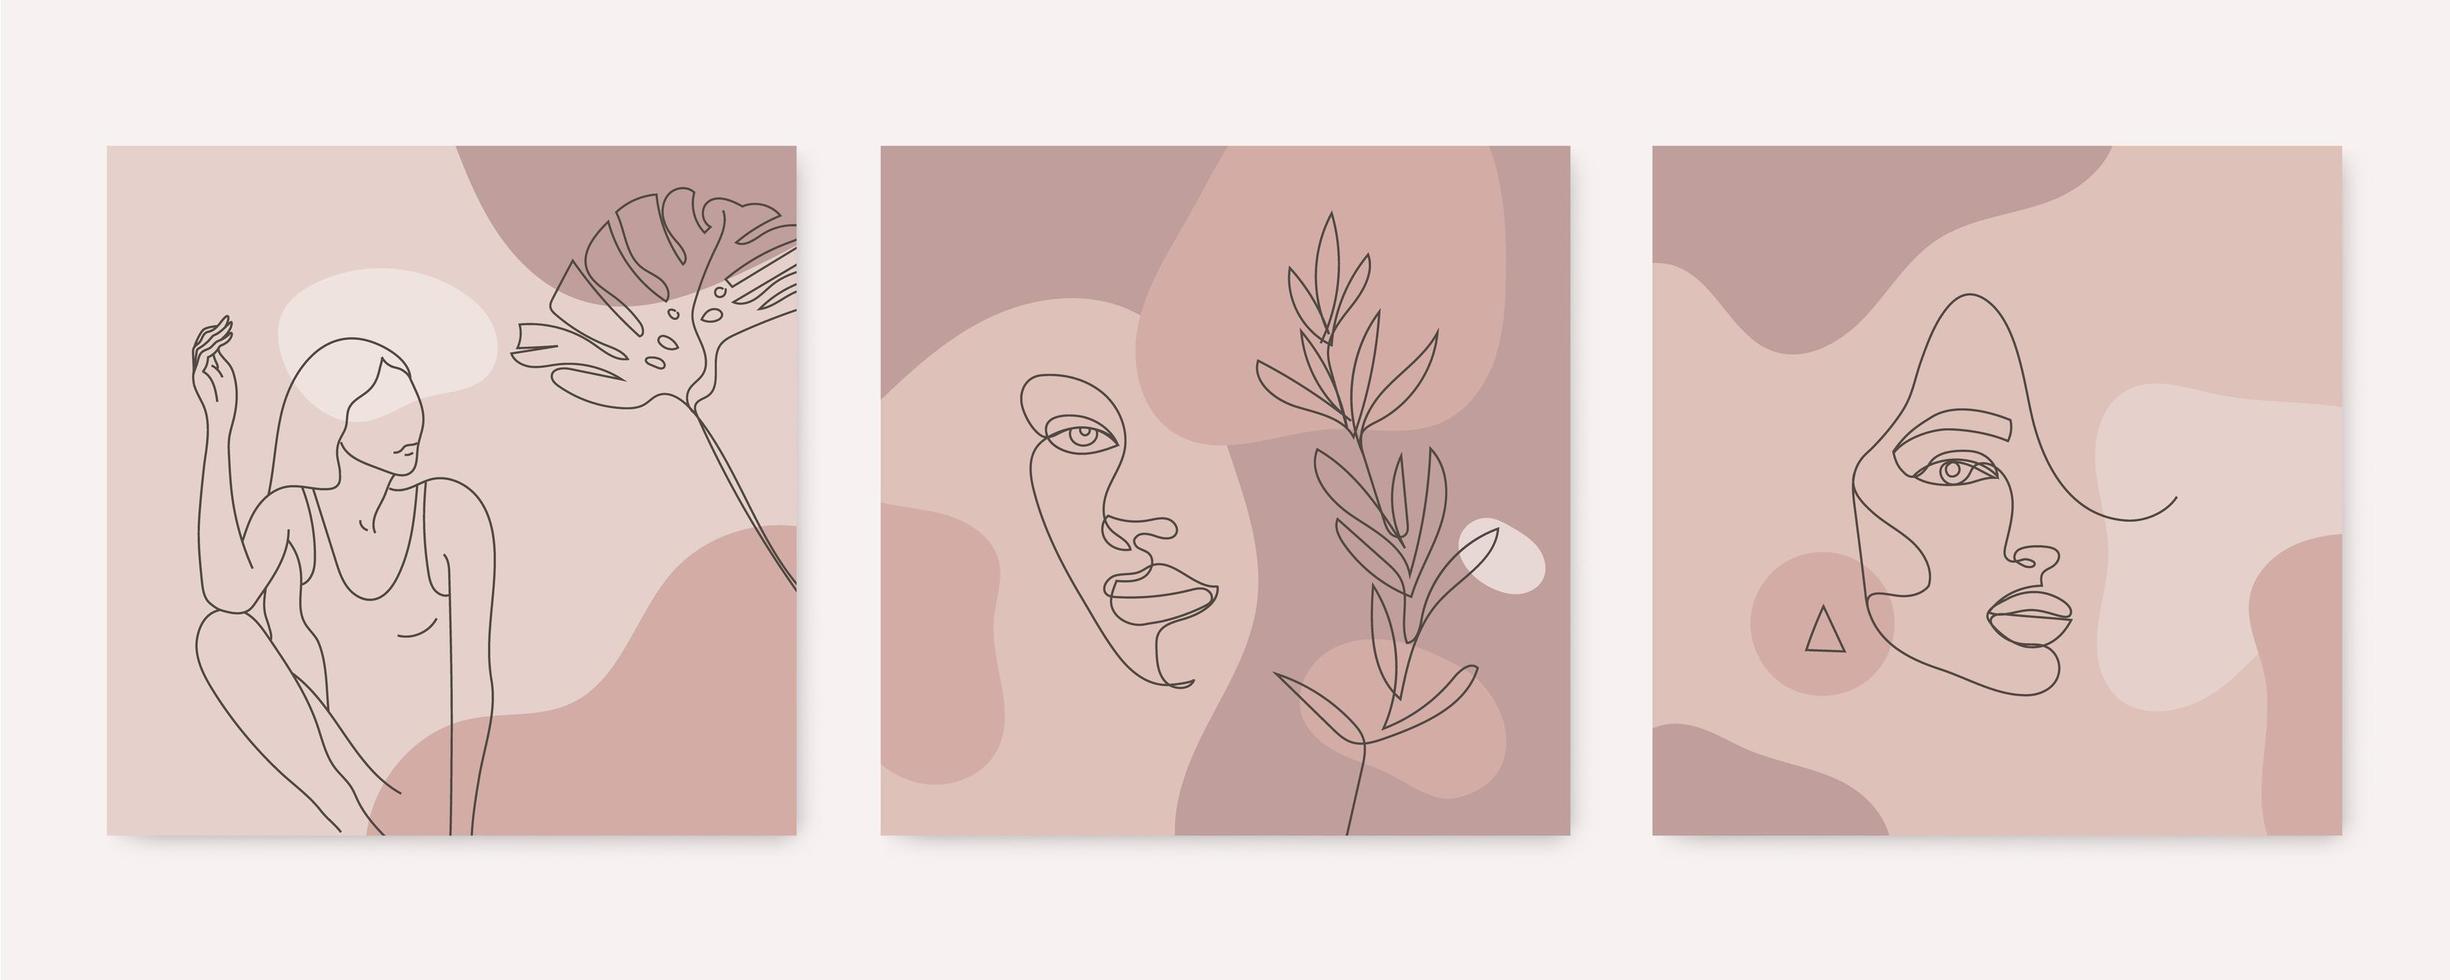 Vektorschönheitshintergründe, Social-Media-Geschichten, Post-Feed-Layouts. Reihe von Illustrationen mit einem durchgehenden Frauengesicht, Körper und Blättern. zeitgenössische Collage mit Spots, quadratisch vektor